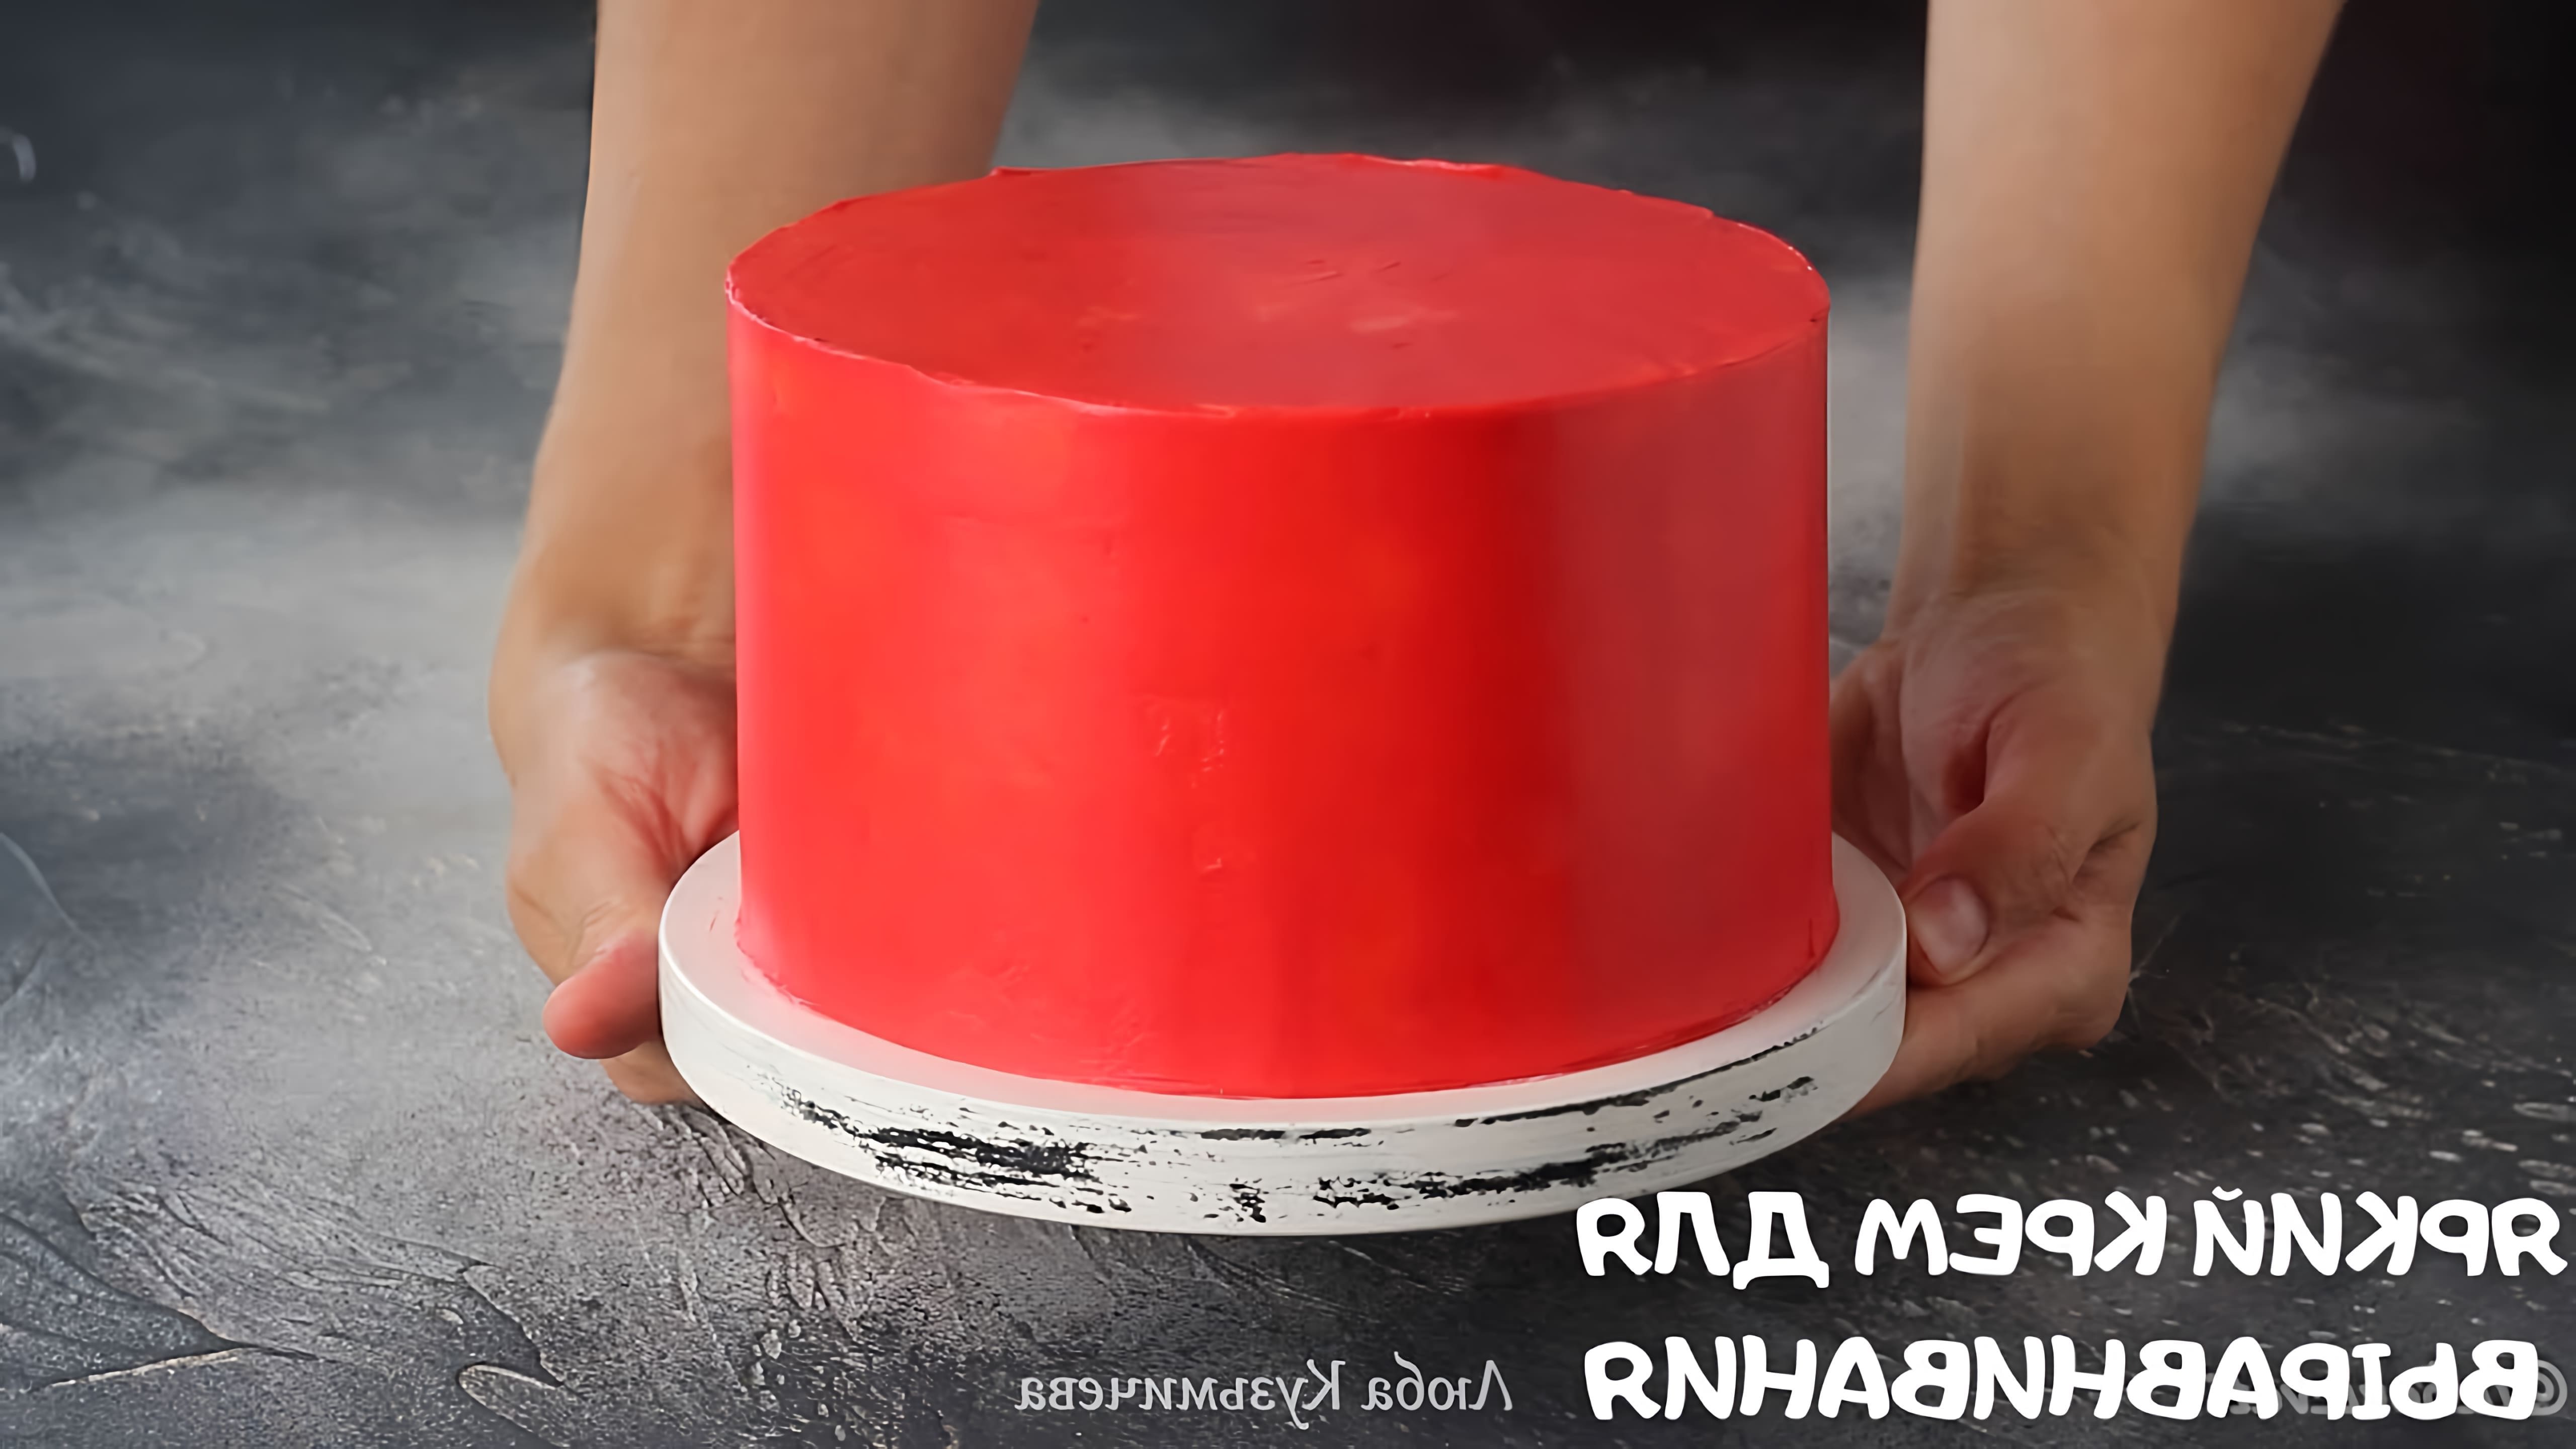 В этом видео показано, как сделать яркий крем для выравнивания торта, используя минимум красителя